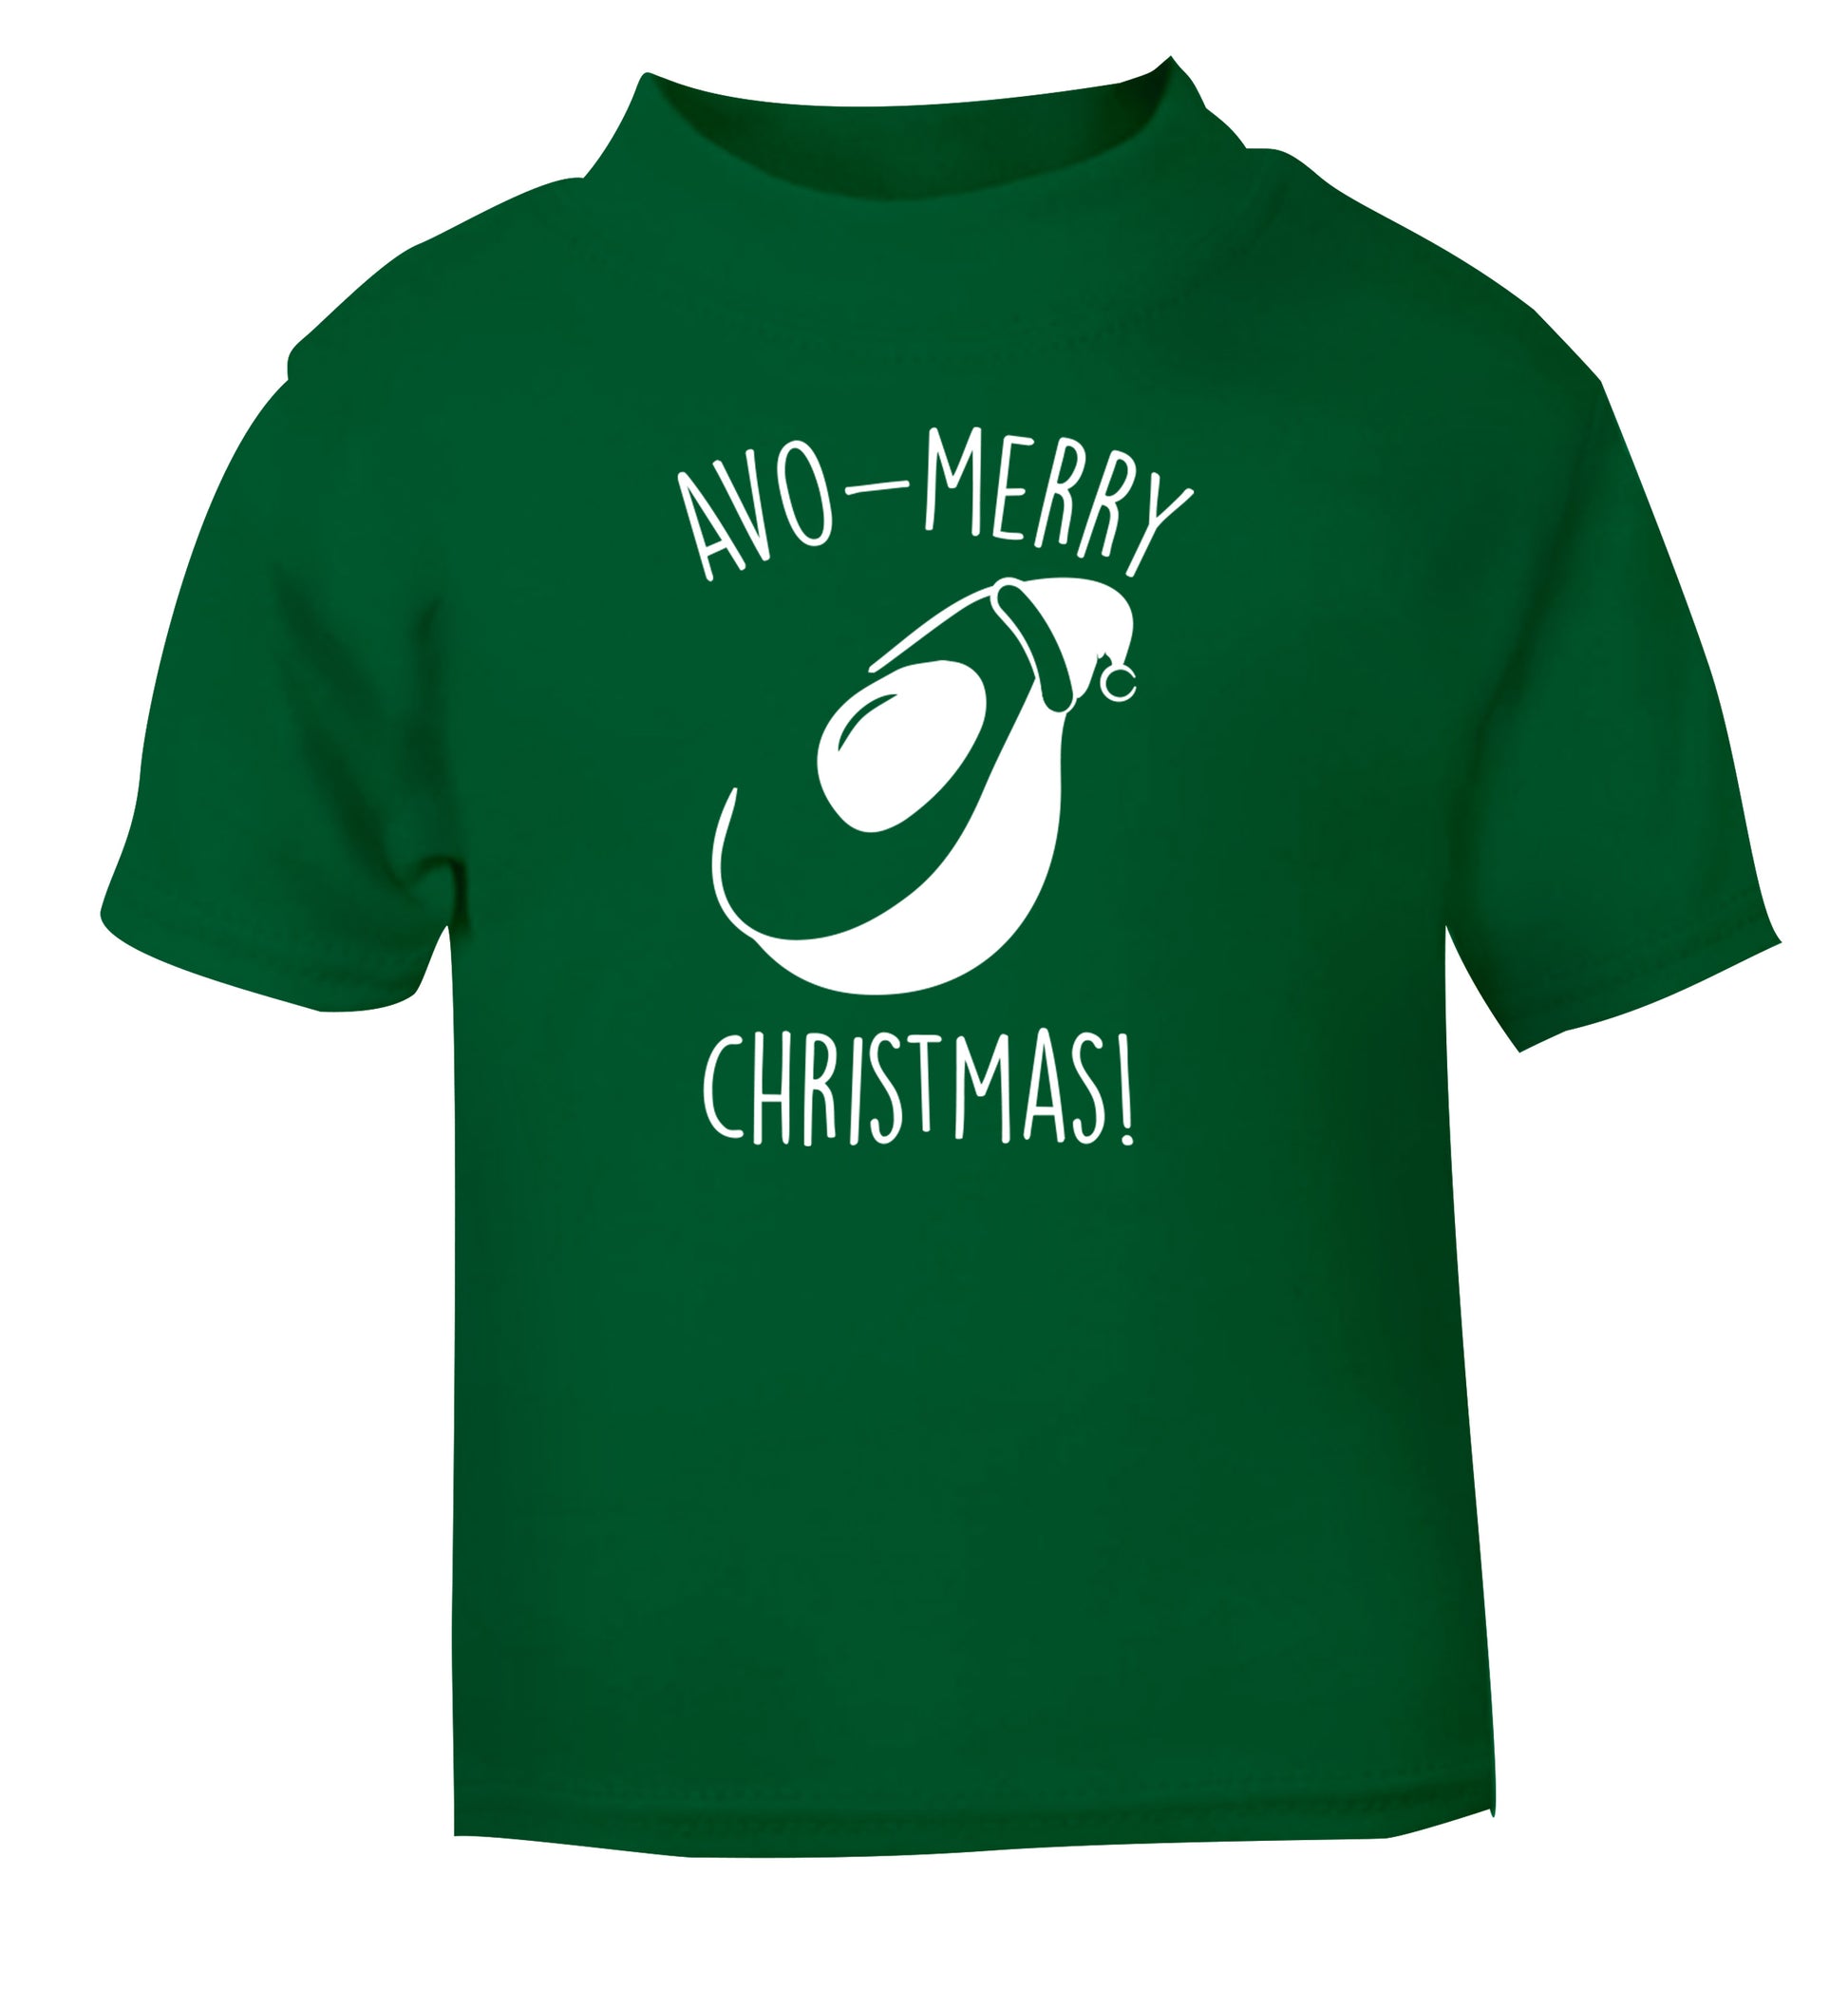 Avo-Merry Christmas green Baby Toddler Tshirt 2 Years